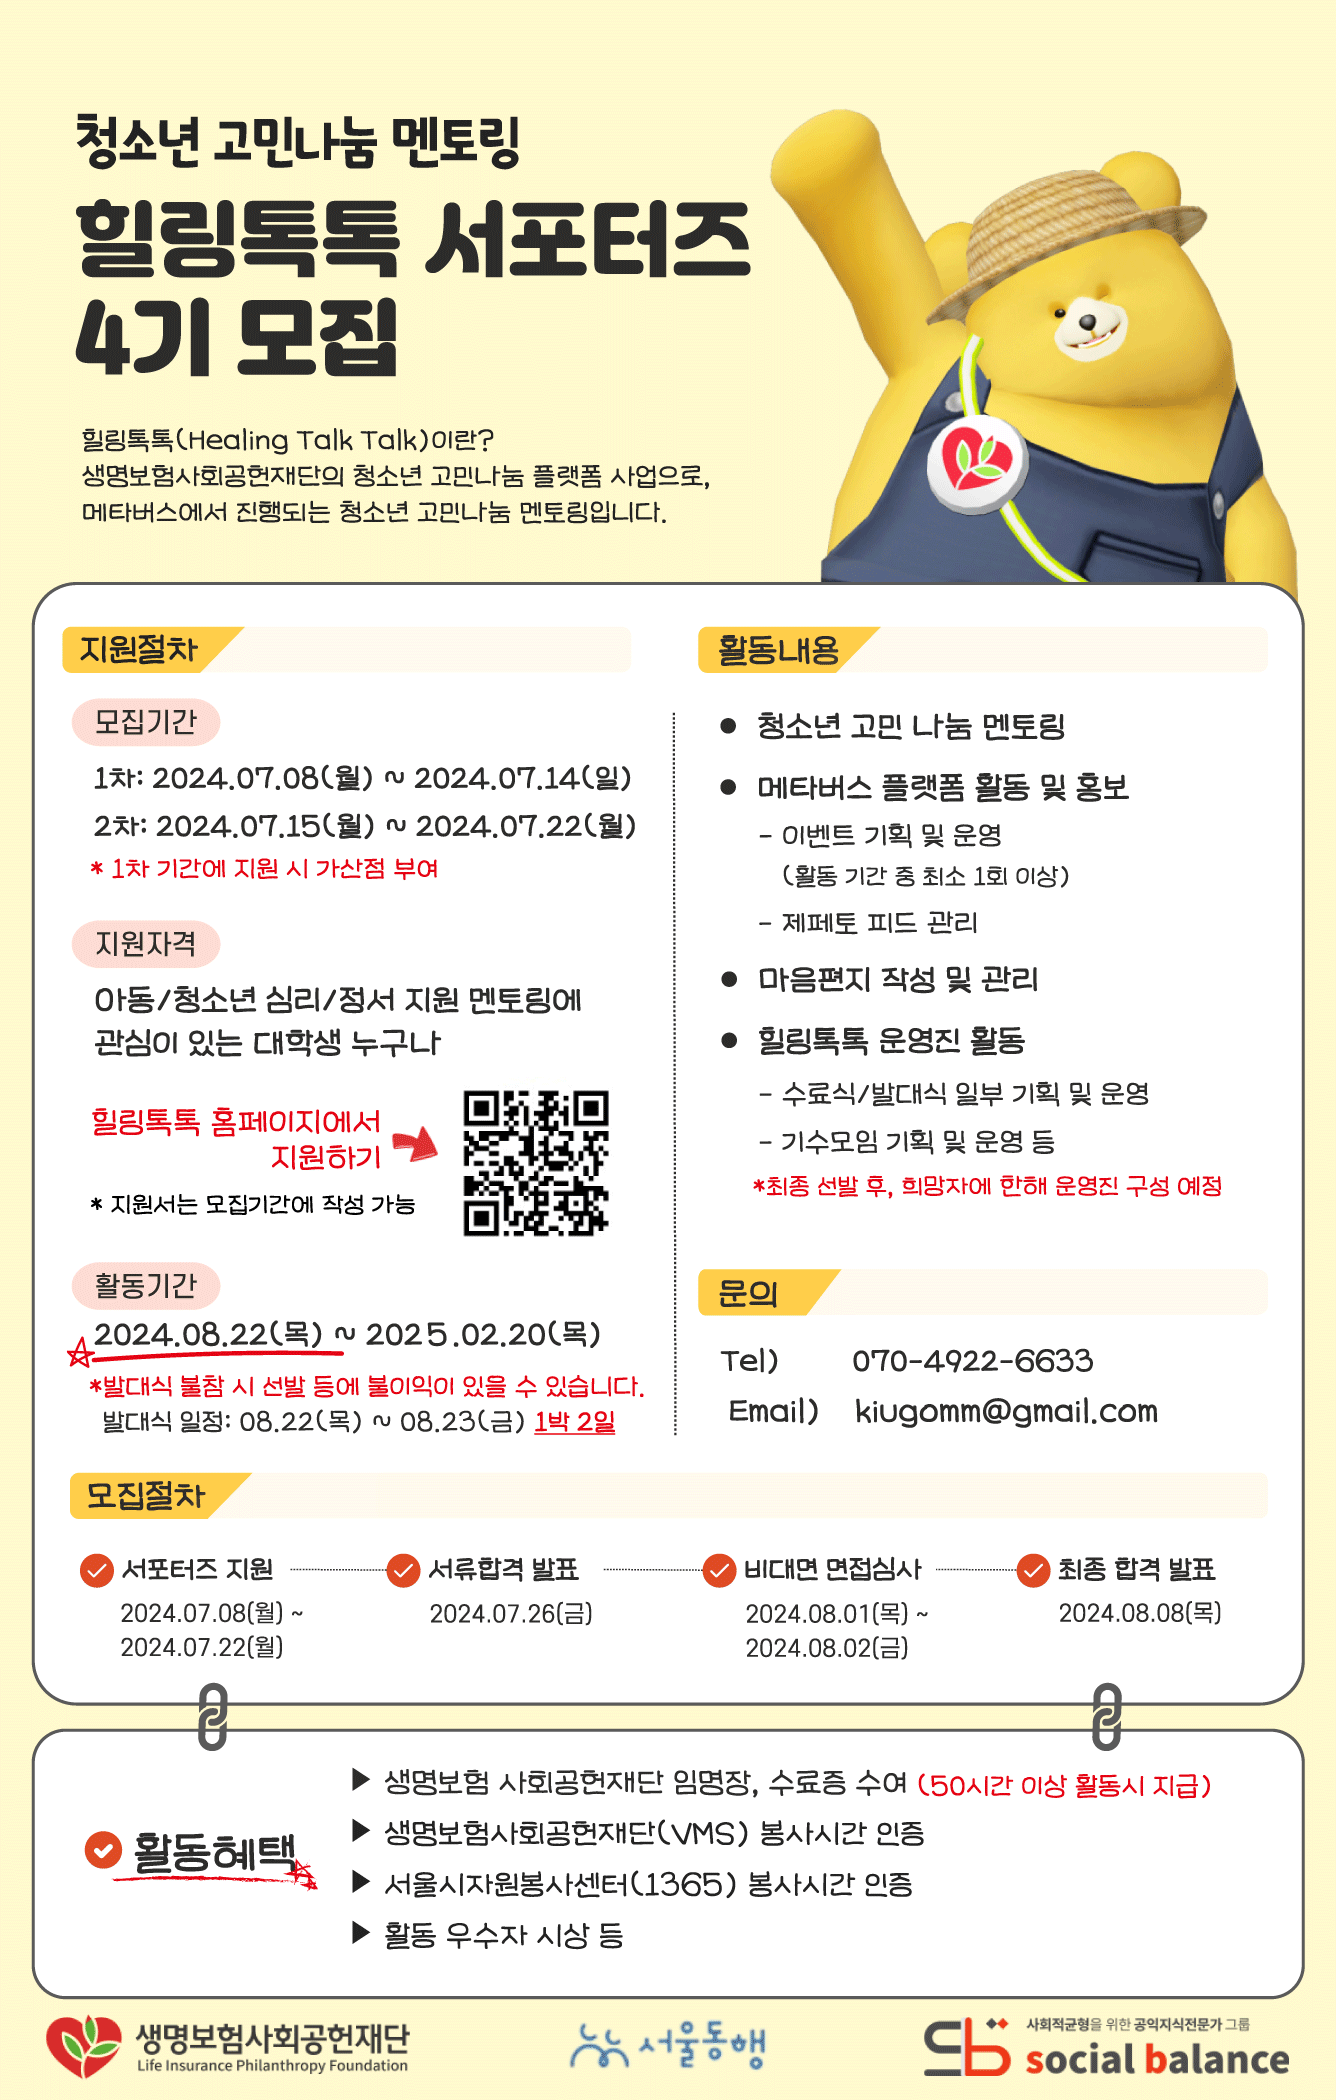 청소년 고민나눔 멘토링 힐링톡톡 서포터즈 4기 모집